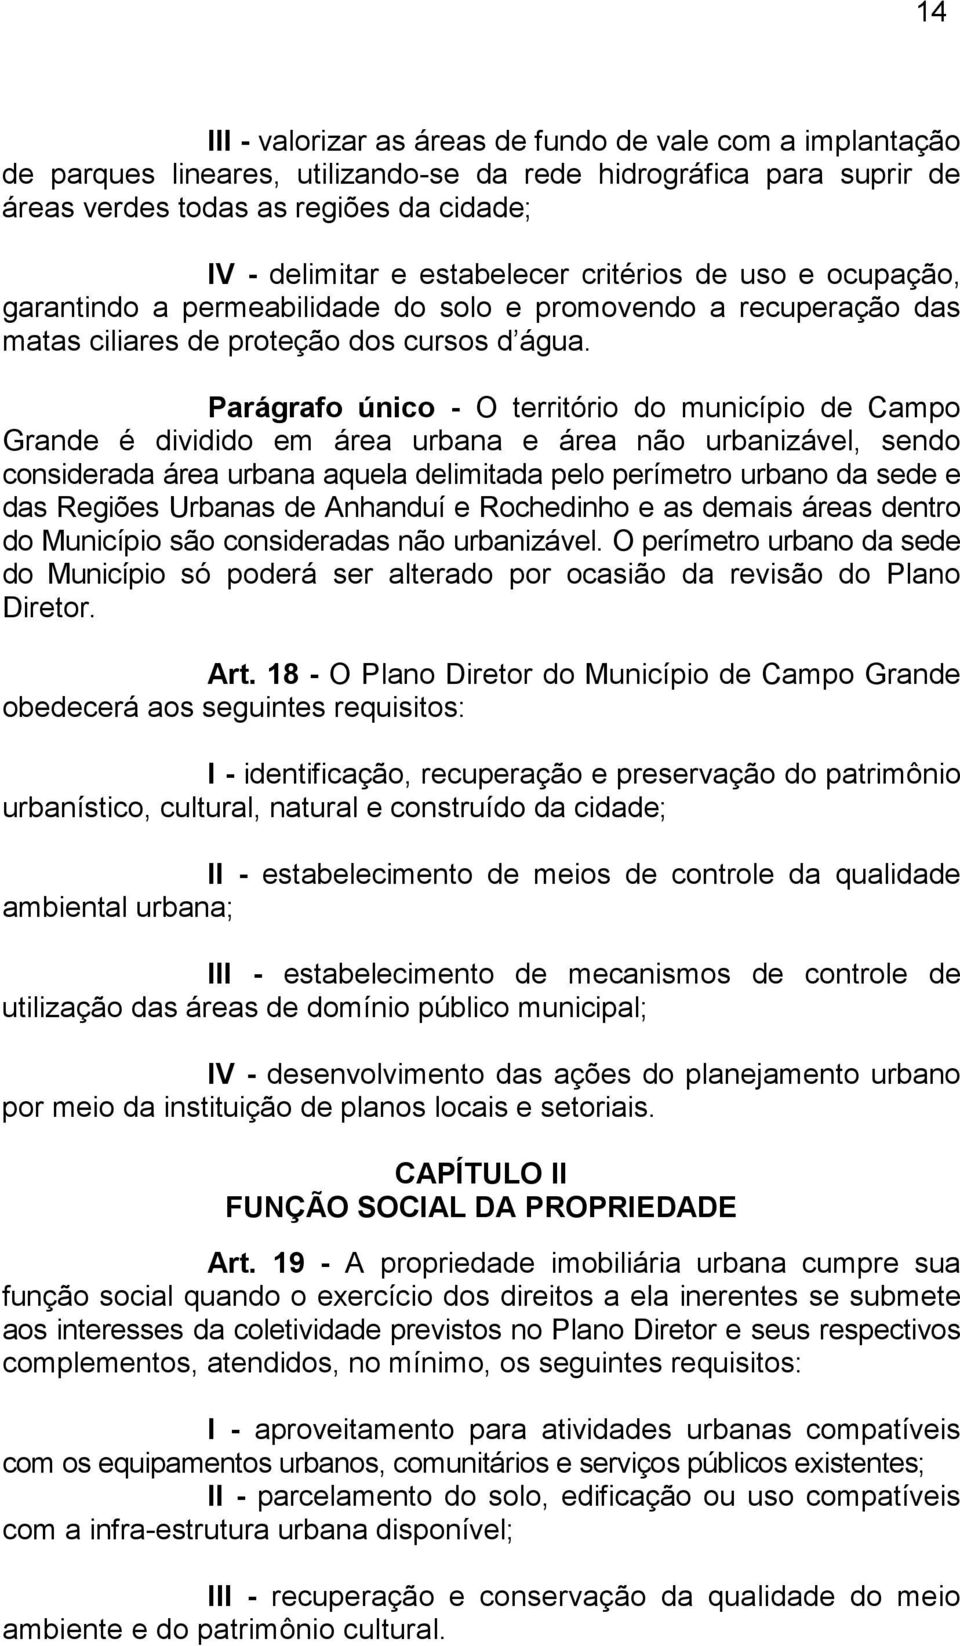 Parágrafo único - O território do município de Campo Grande é dividido em área urbana e área não urbanizável, sendo considerada área urbana aquela delimitada pelo perímetro urbano da sede e das